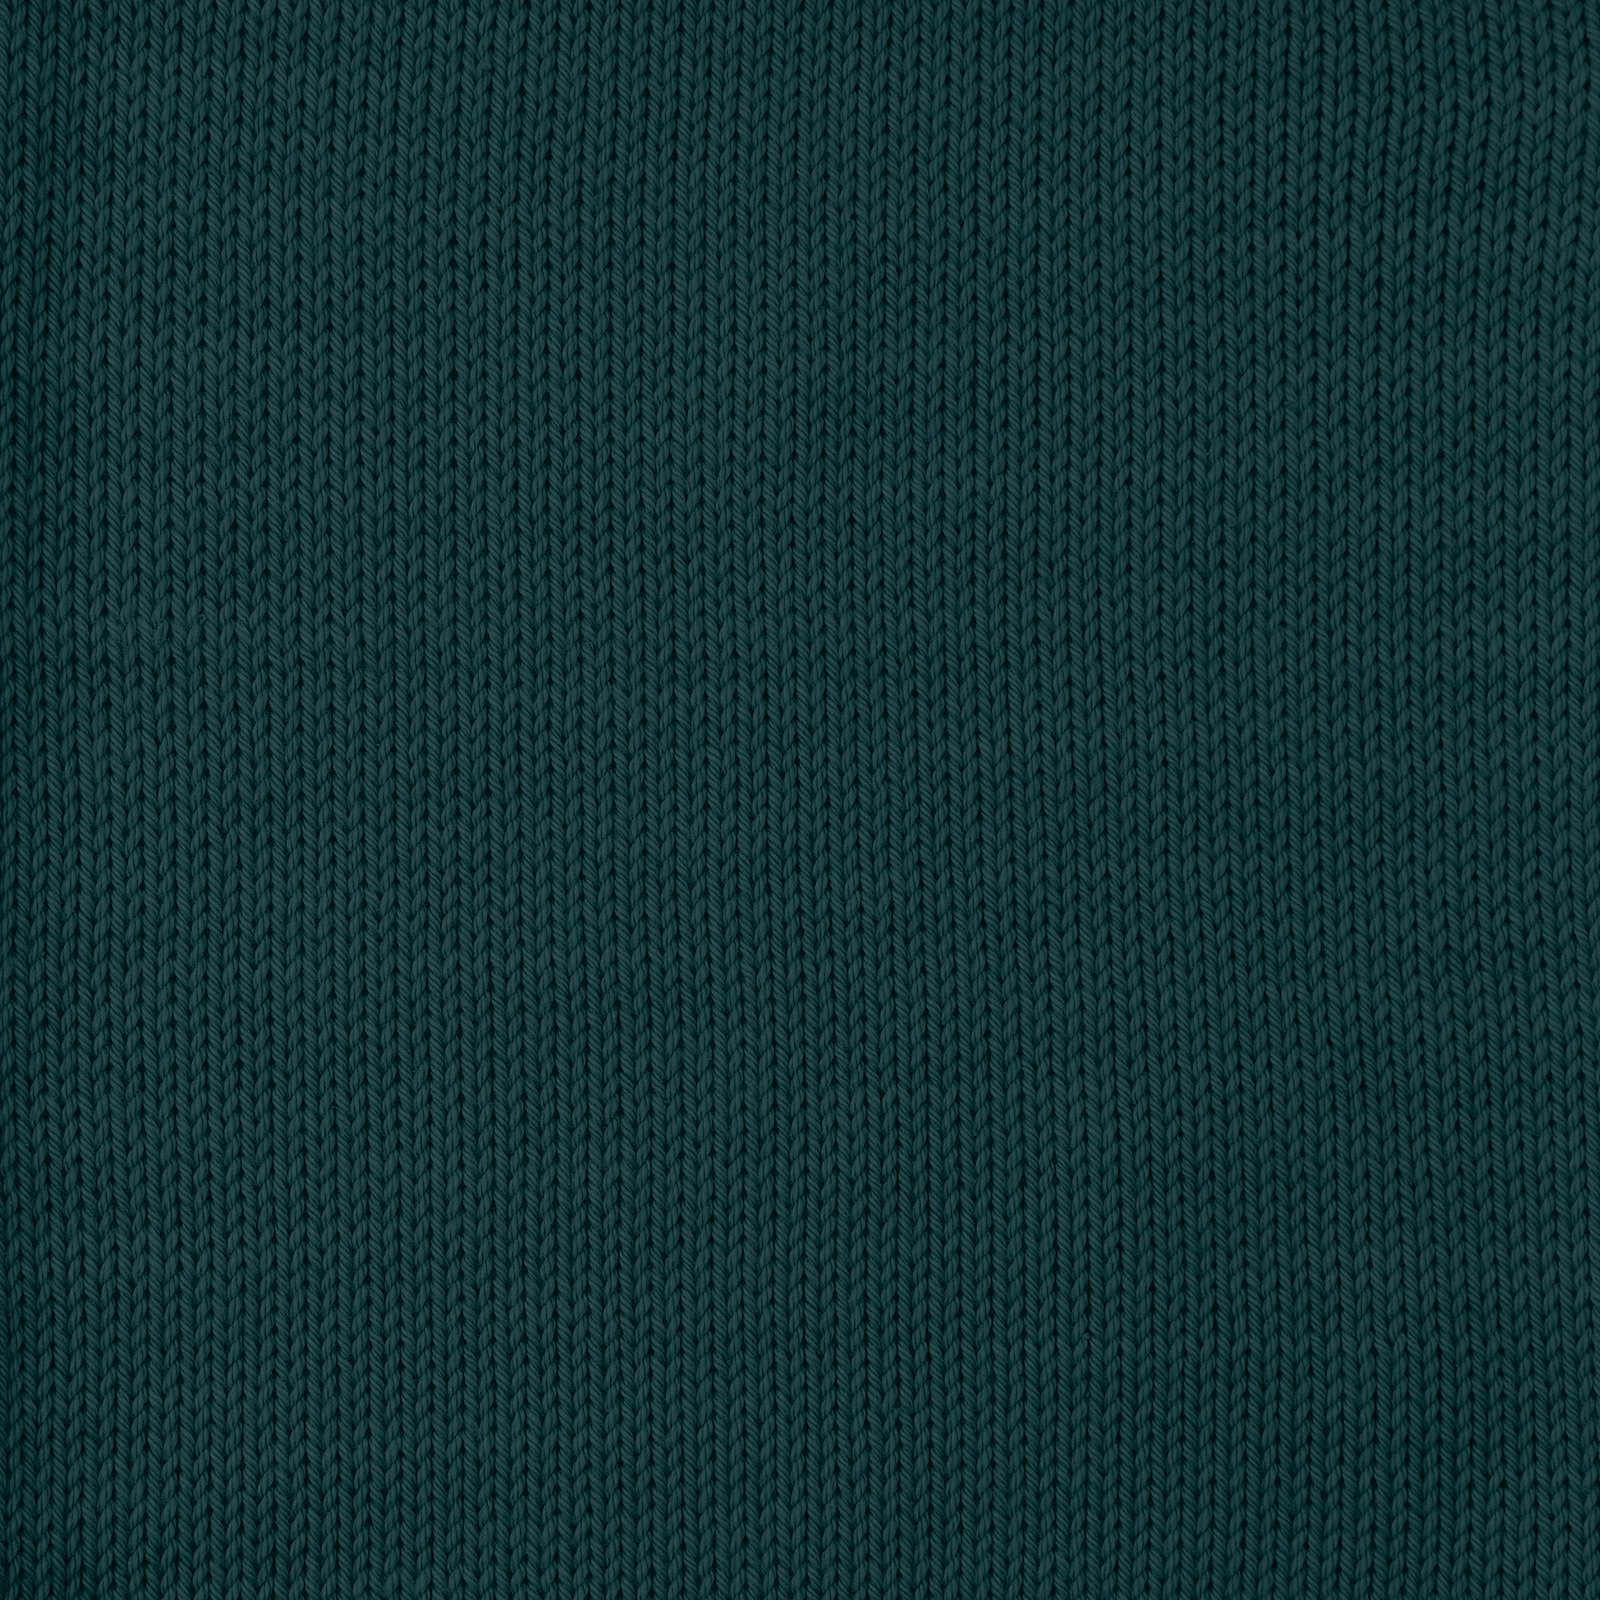 FRAYA, 100% cotton yarn "Colourful", bottle green 90060003_sskit